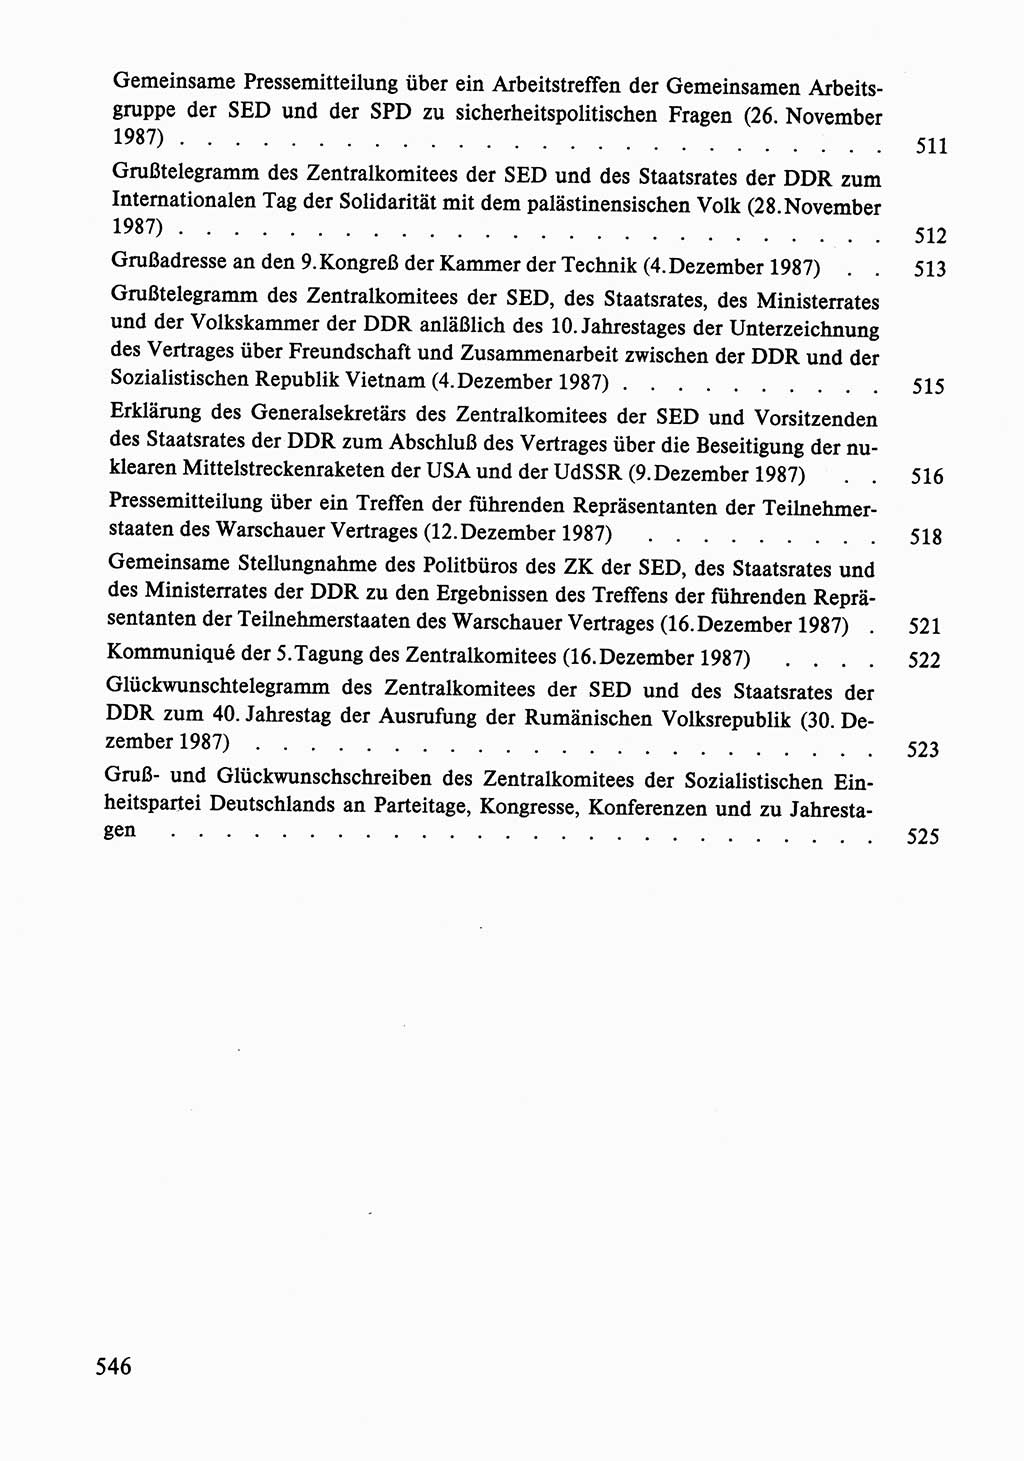 Dokumente der Sozialistischen Einheitspartei Deutschlands (SED) [Deutsche Demokratische Republik (DDR)] 1986-1987, Seite 546 (Dok. SED DDR 1986-1987, S. 546)